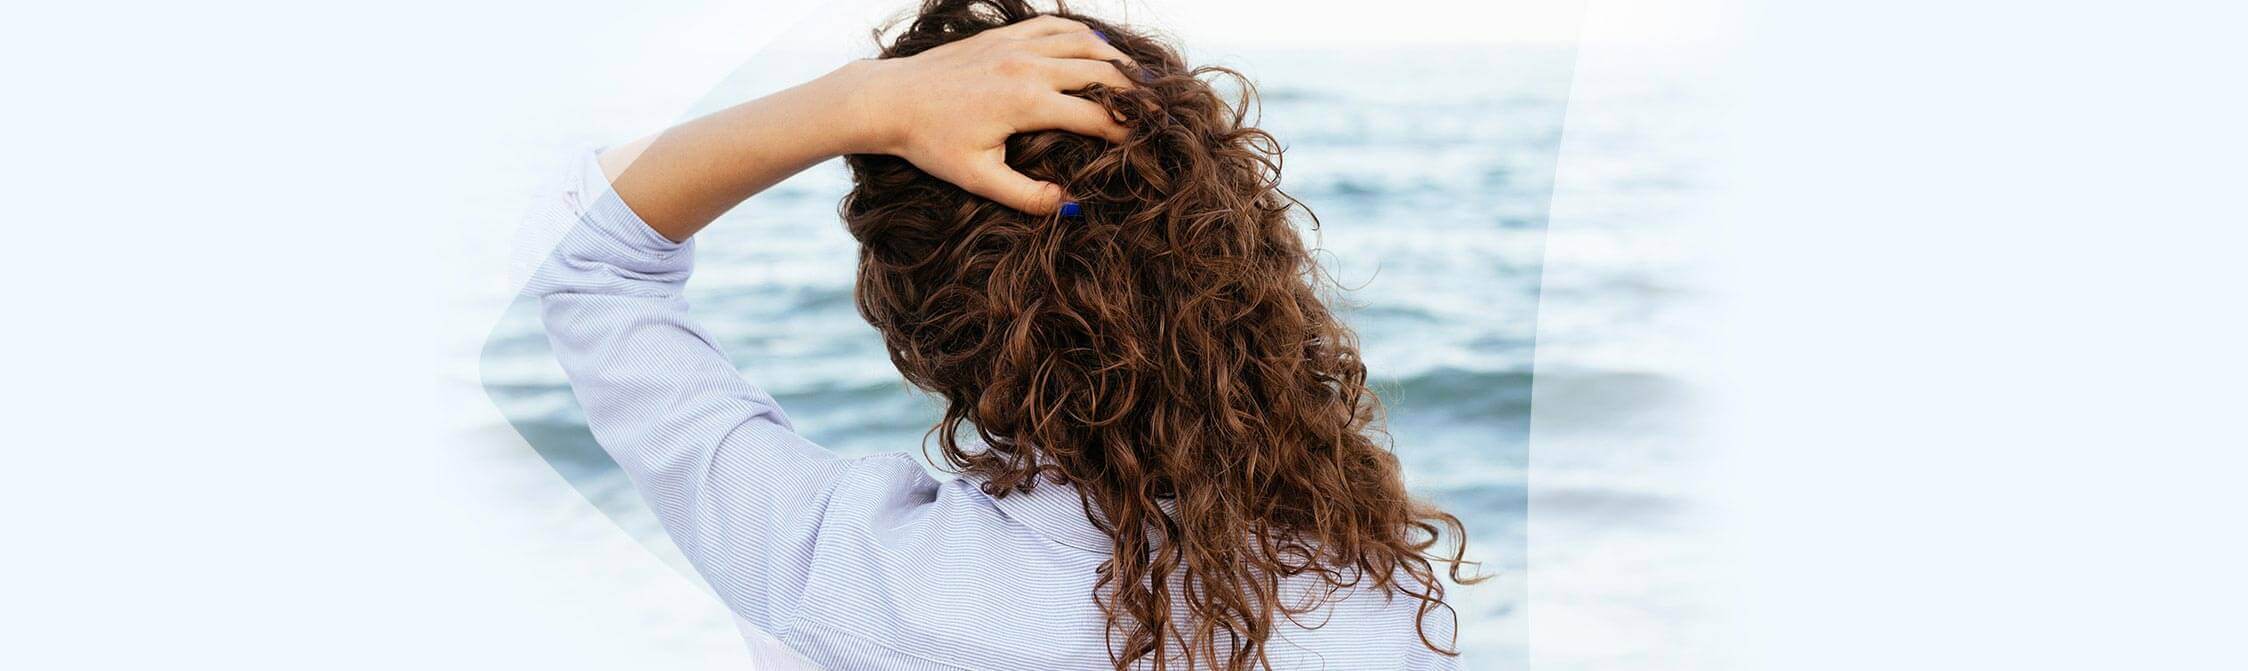 Une femme contemple la mer, les mains dans les cheveux